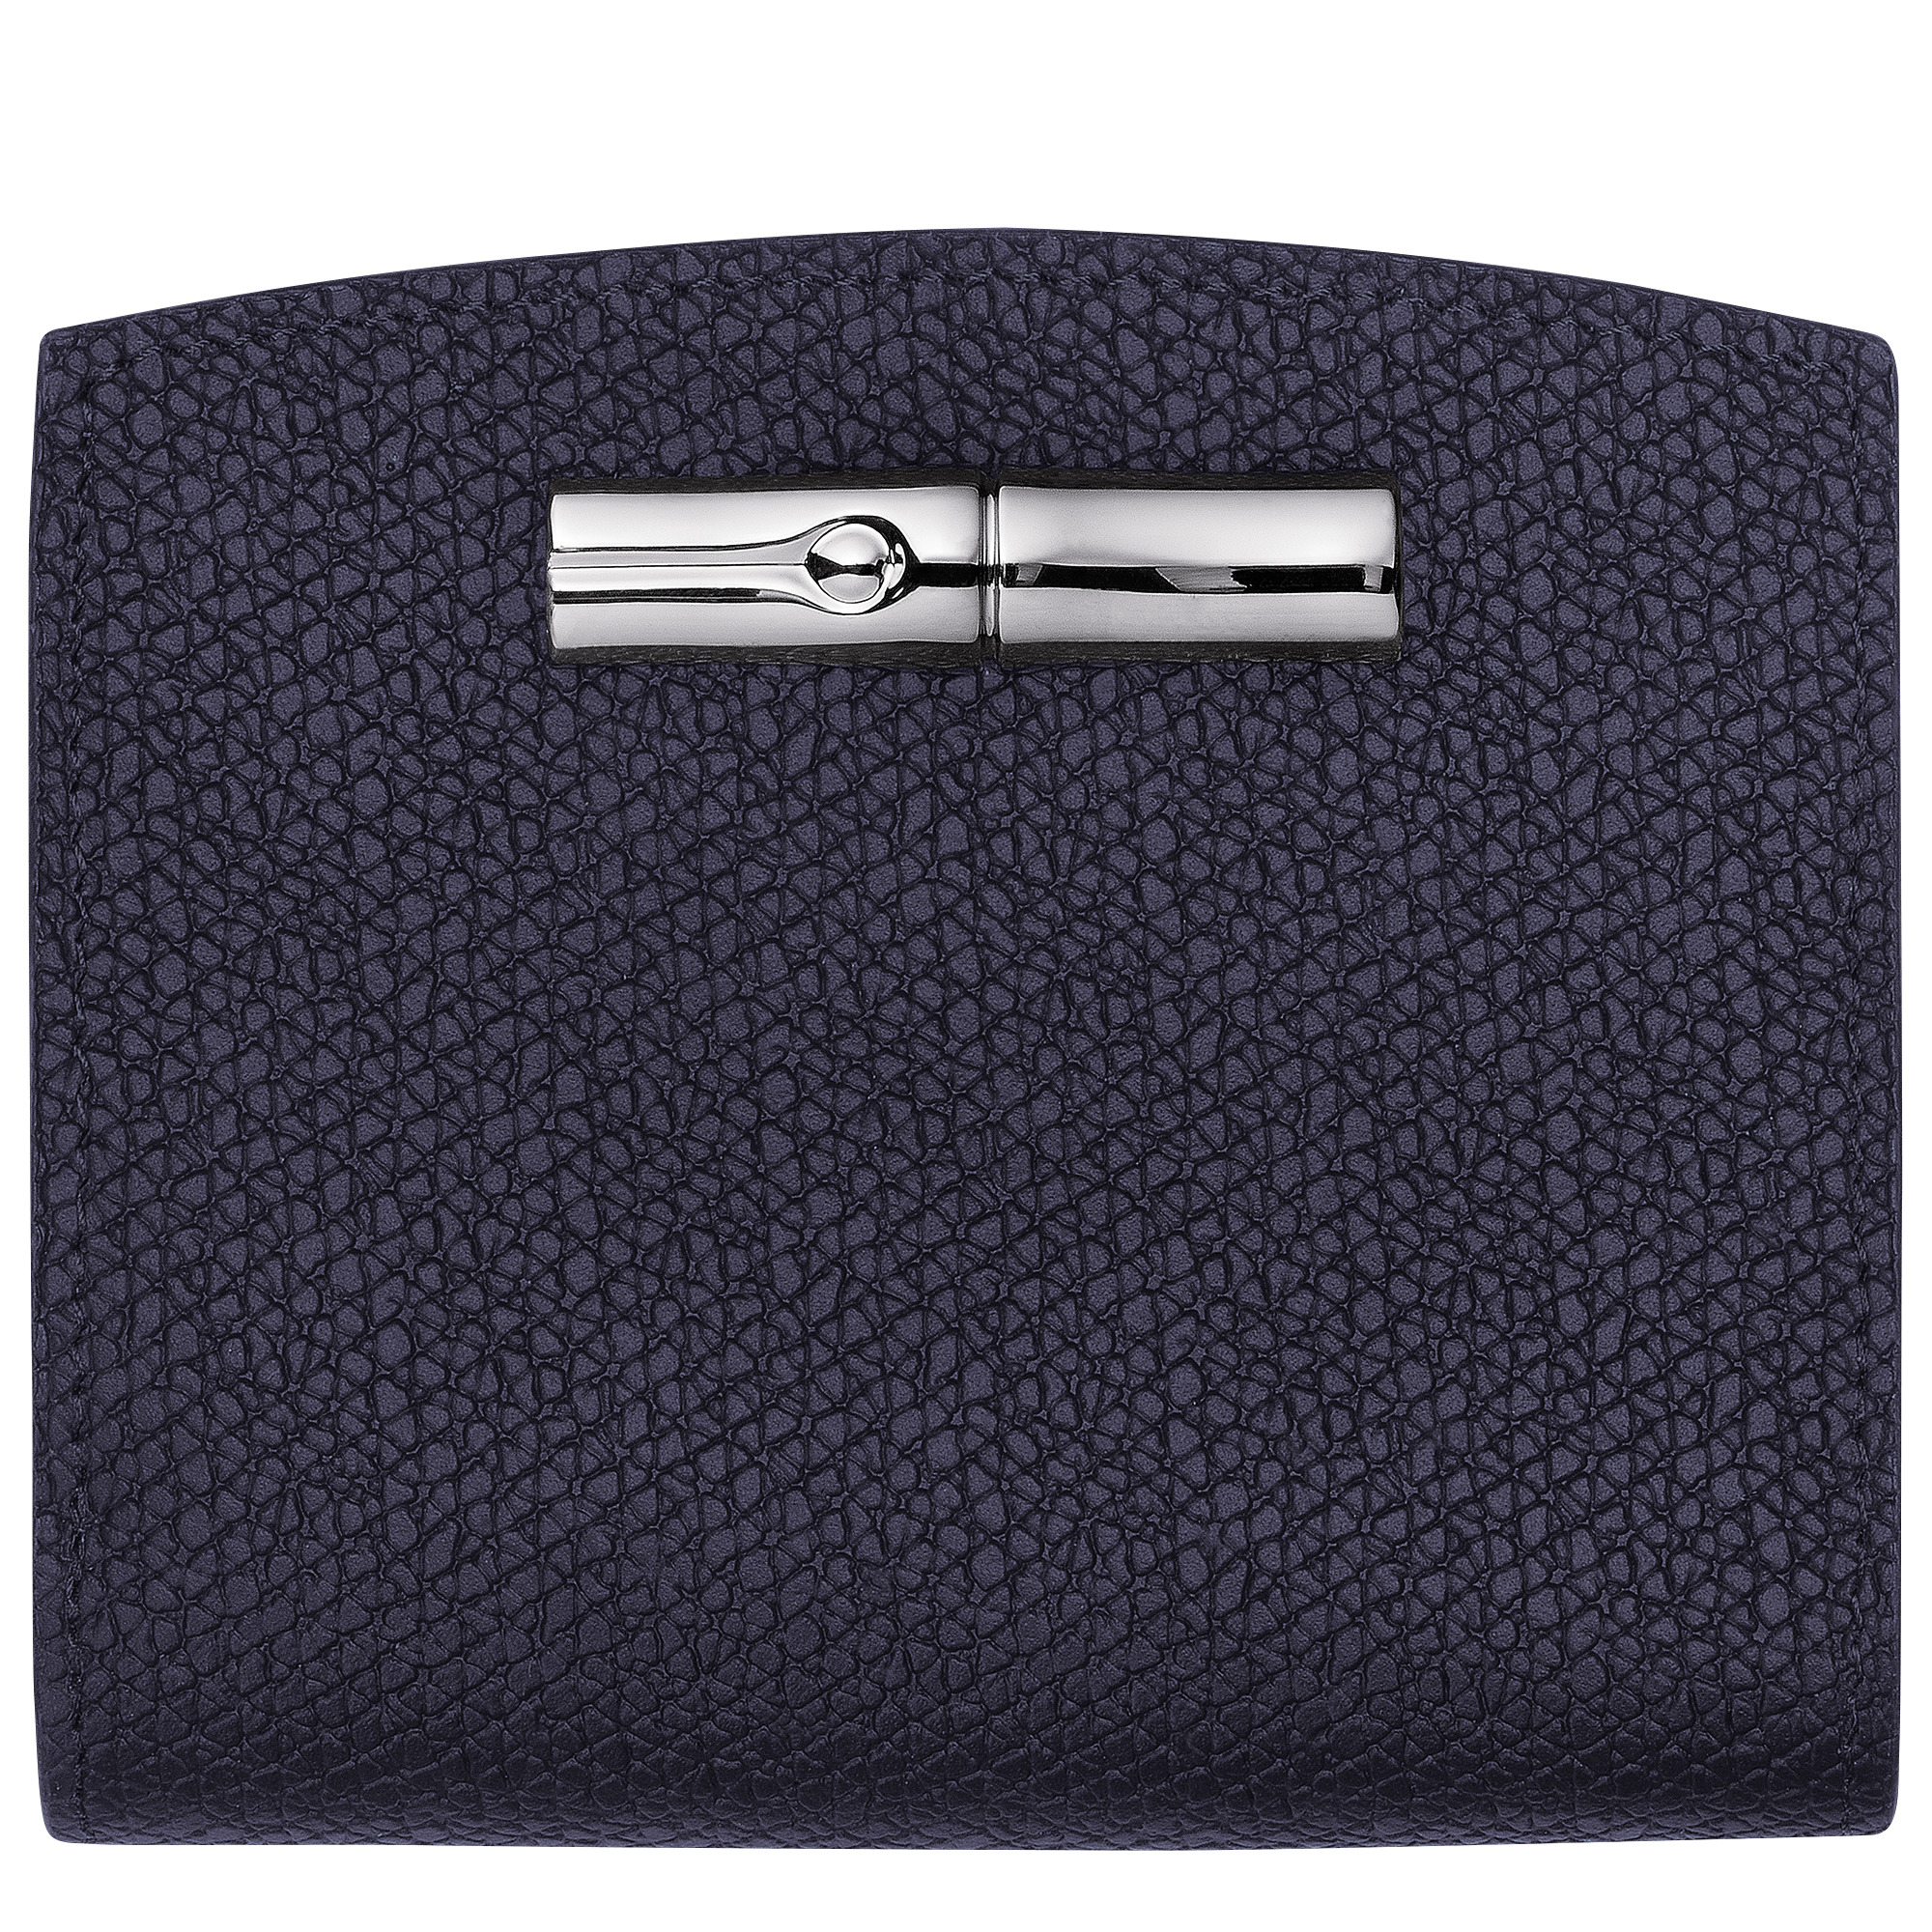 Roseau Wallet Bilberry - Leather - 1